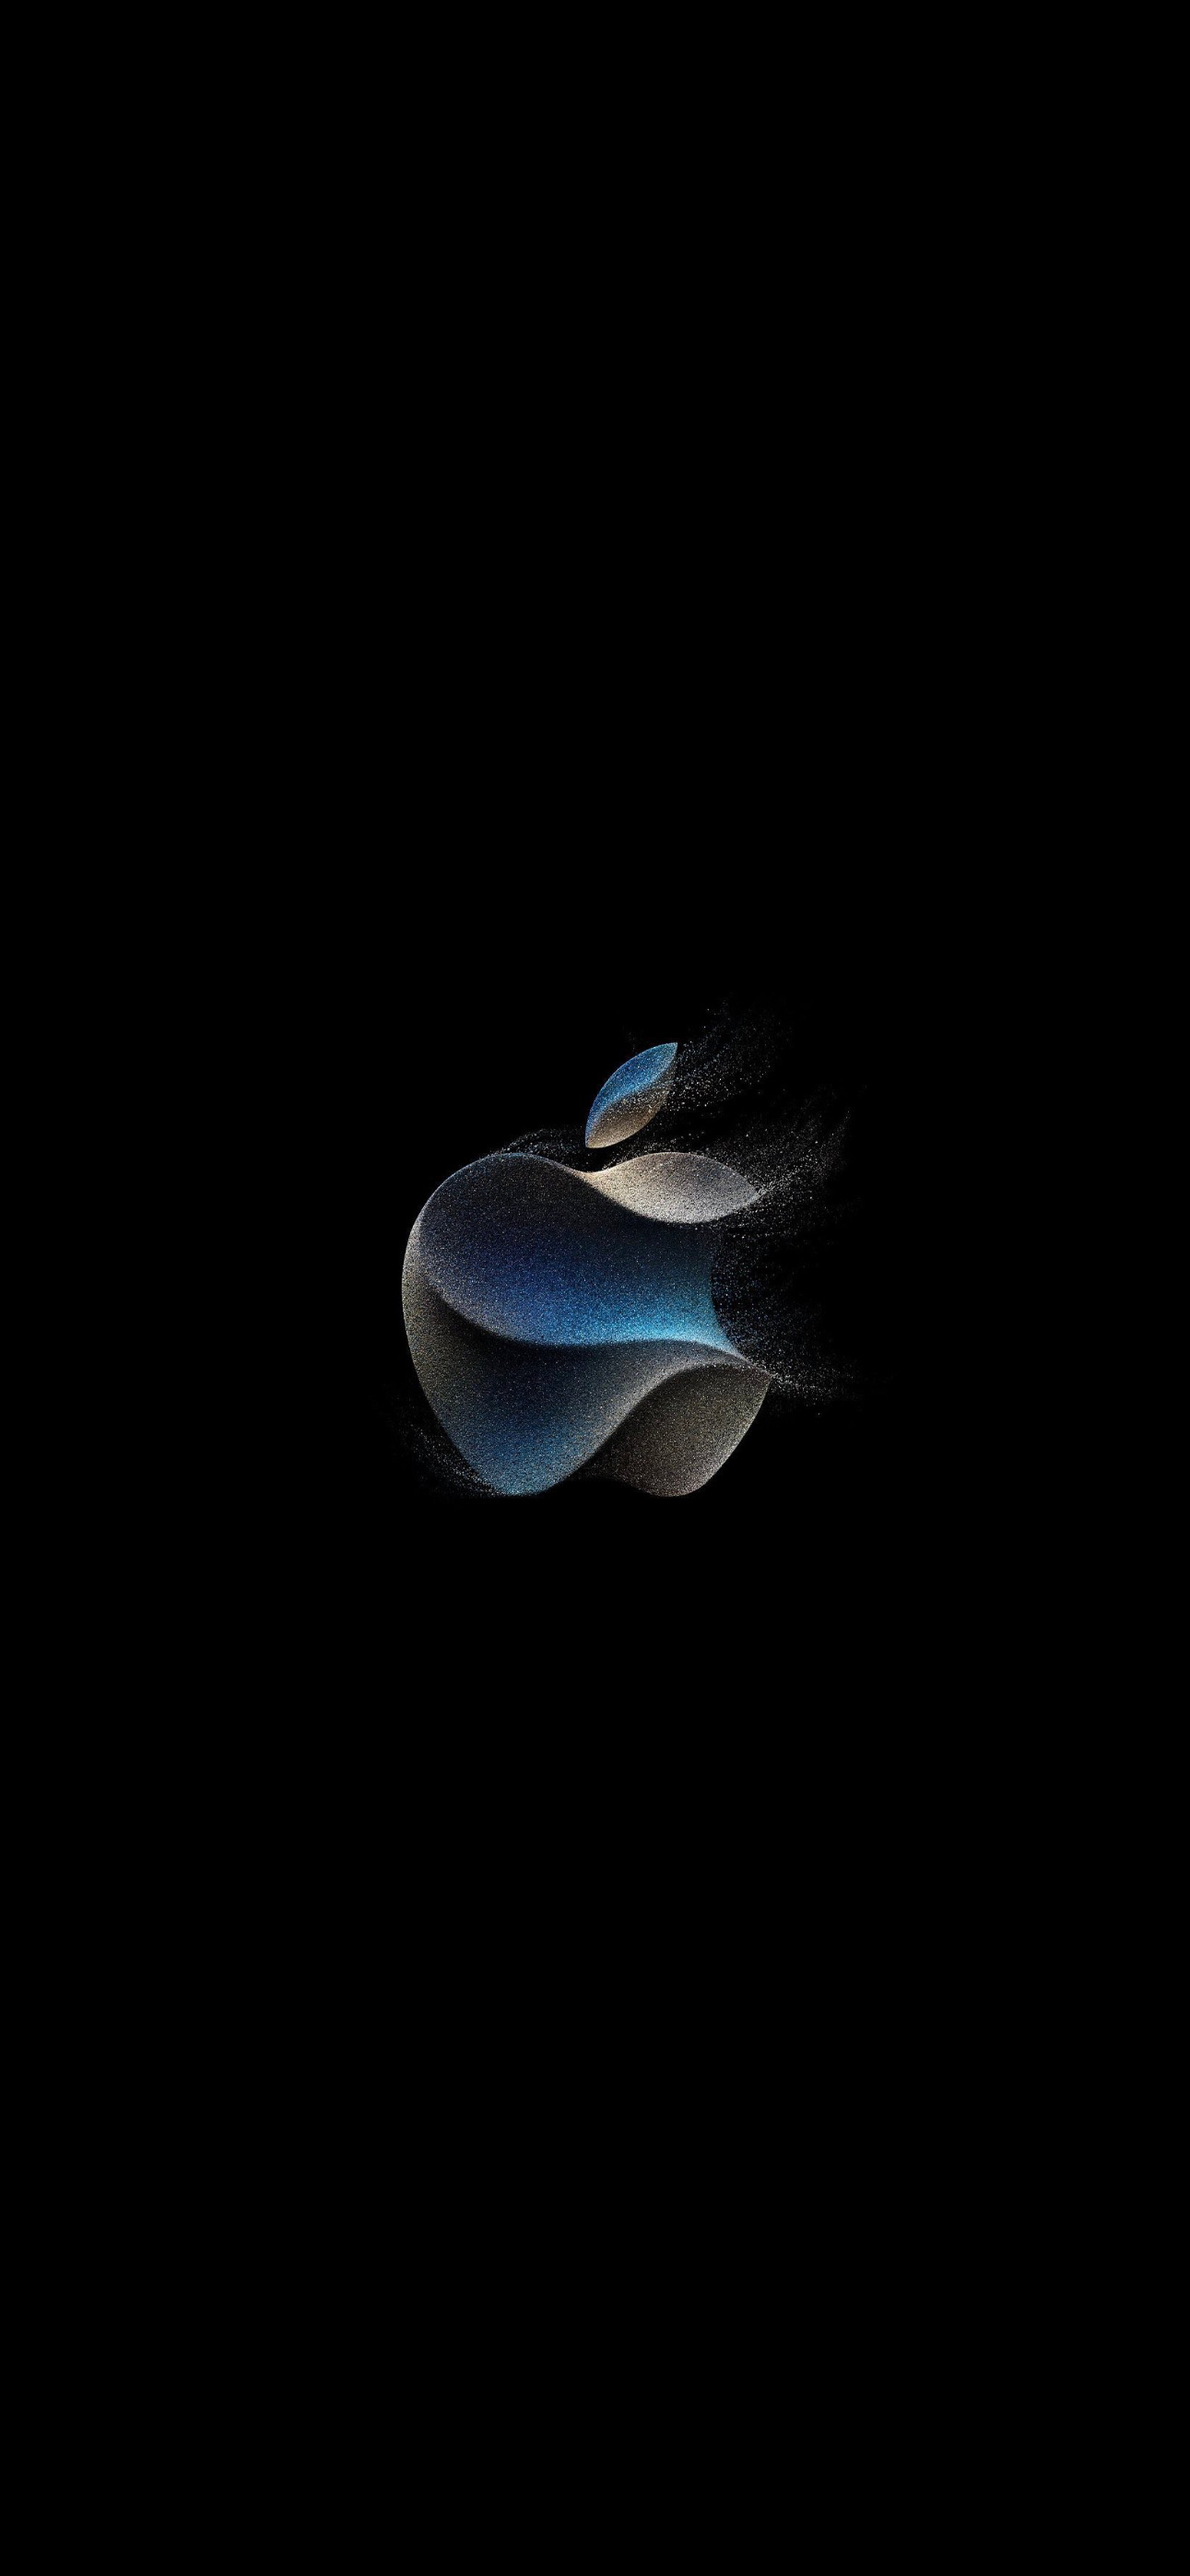 Apple "Wonderlust" September 2023 Event